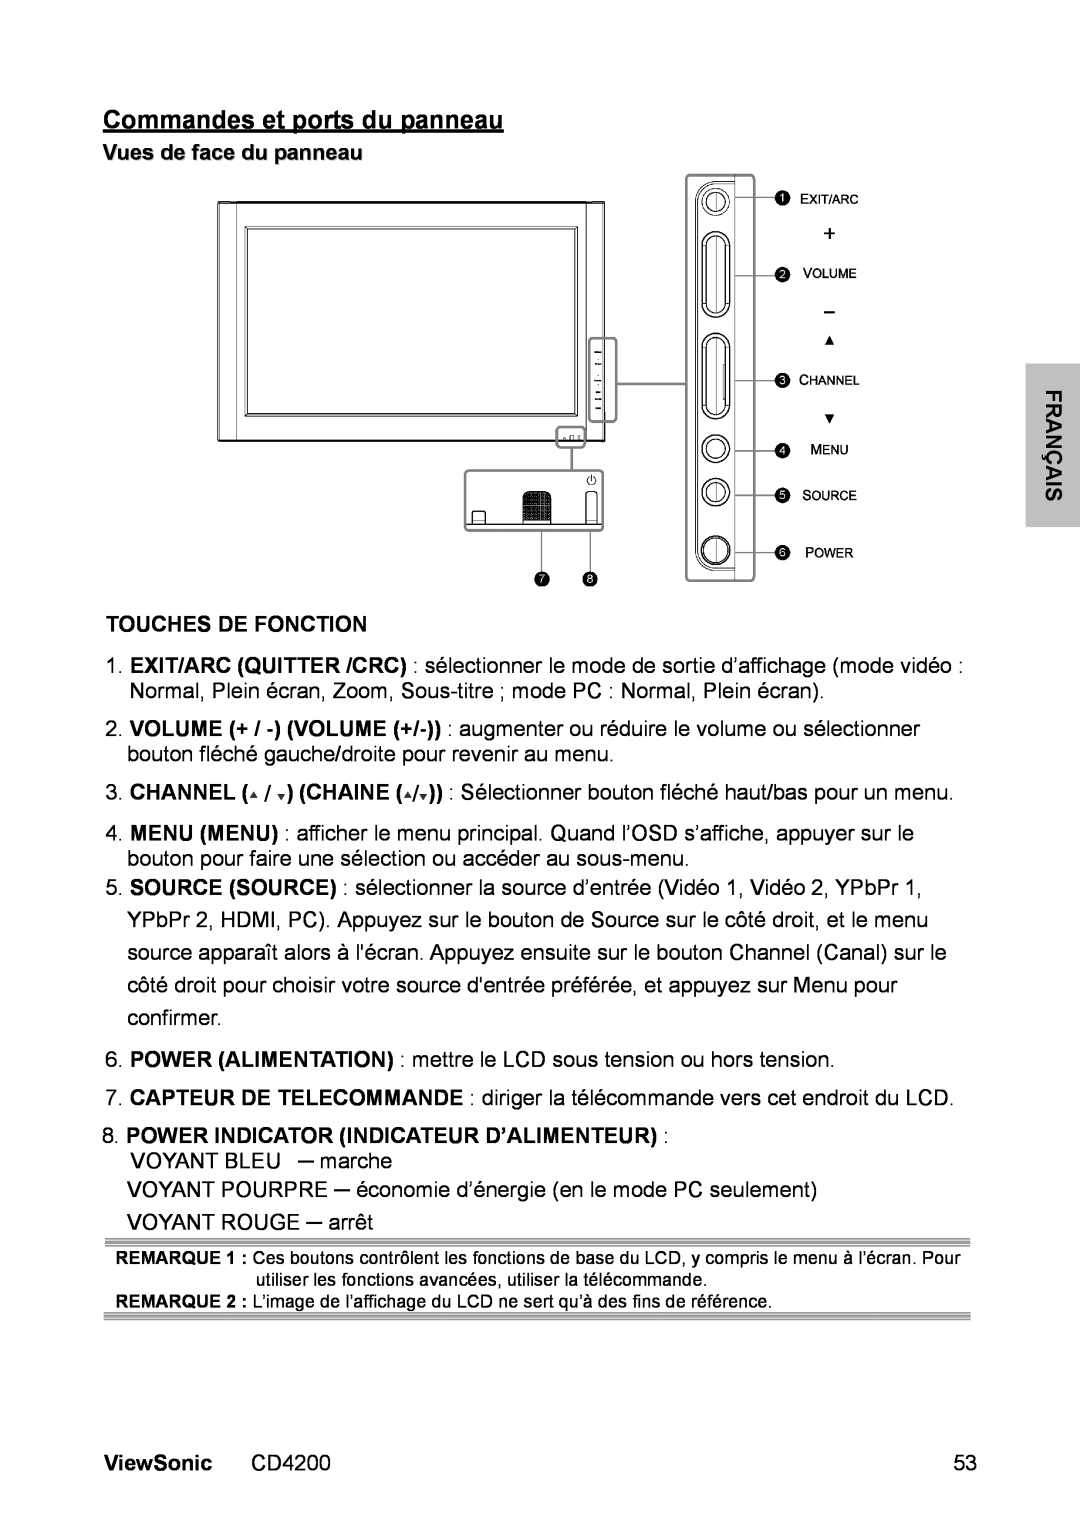 ViewSonic manual Commandes et ports du panneau, Vues de face du panneau FRANÇAIS TOUCHES DE FONCTION, ViewSonic CD4200 